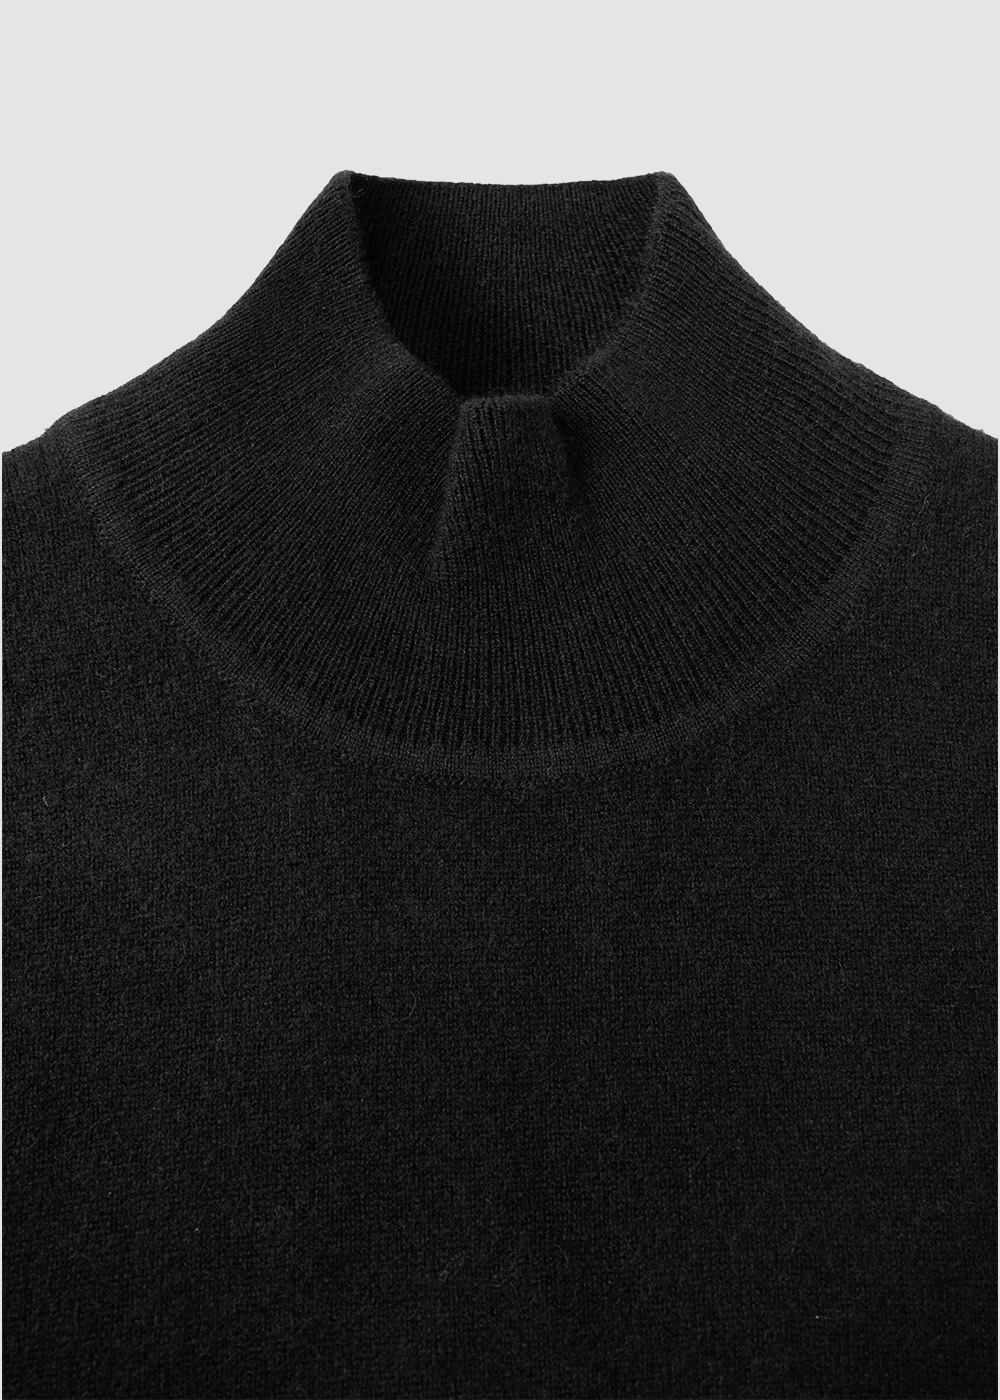 Cashmere 100% Mockneck Knit _ black